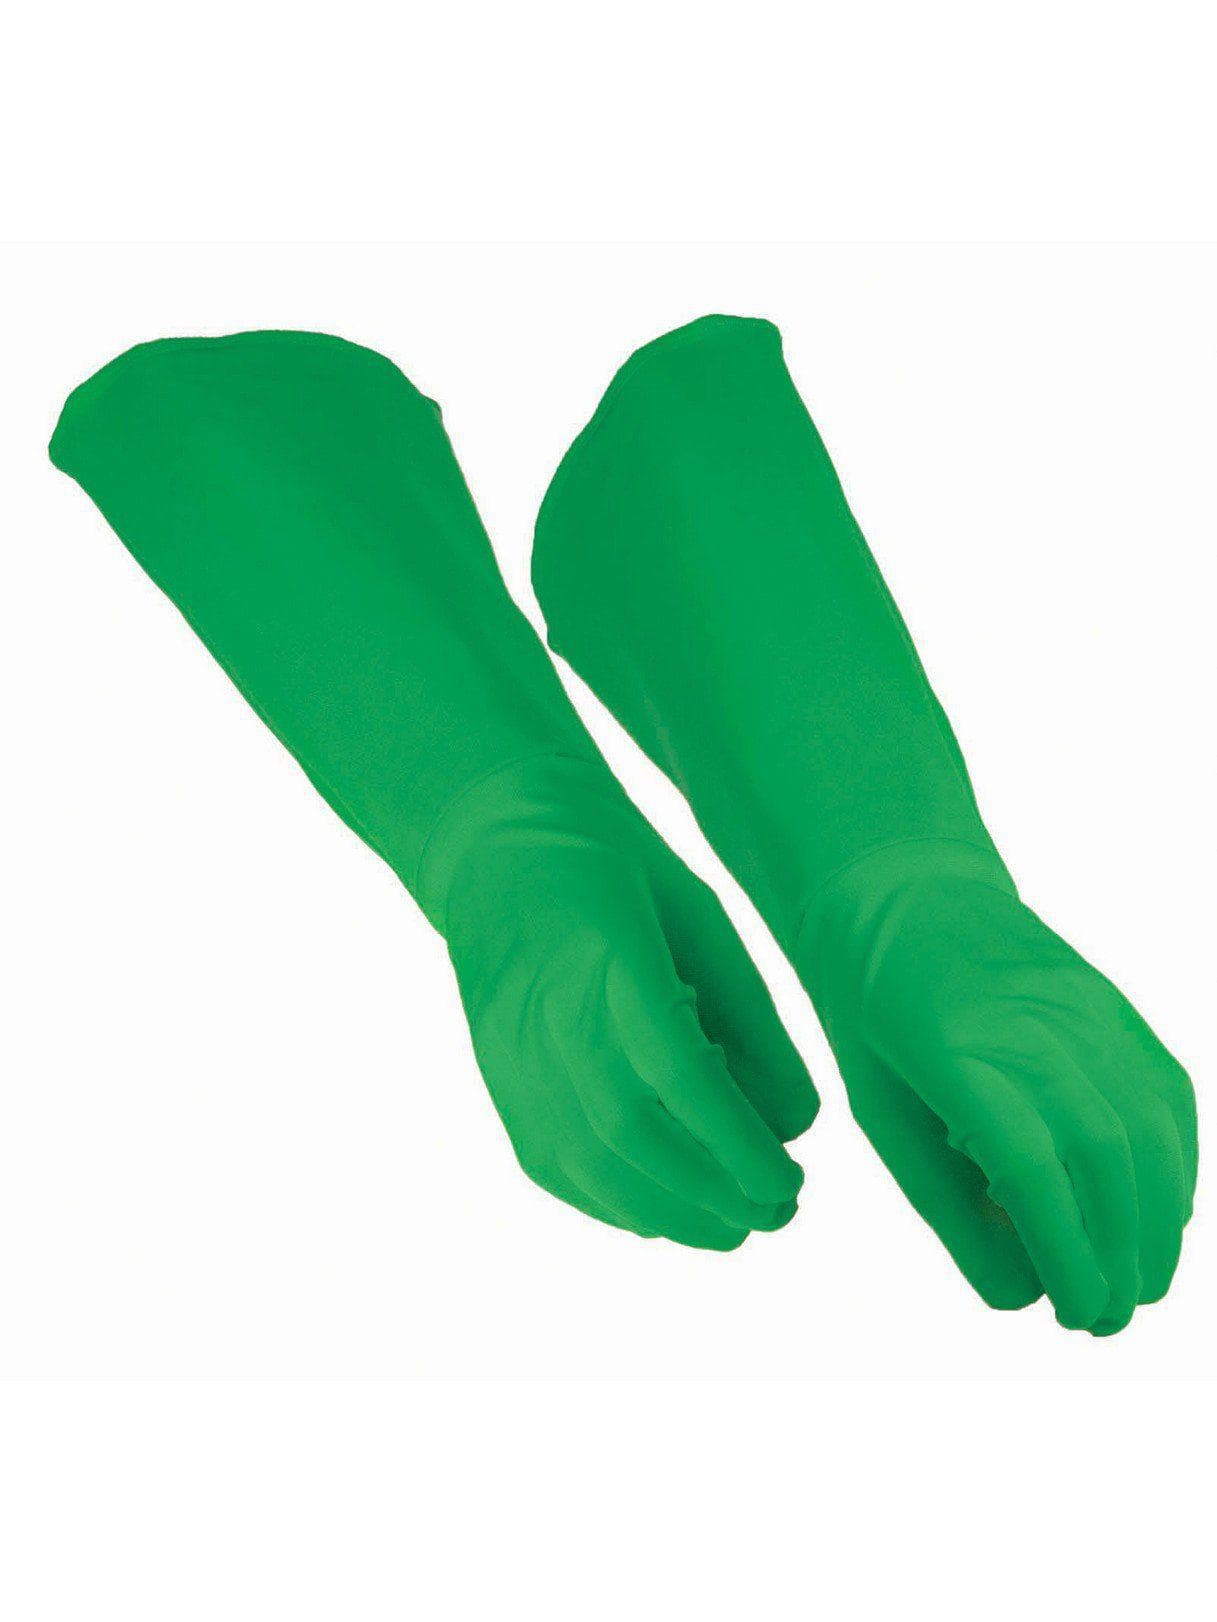 Hero Gauntlet Gloves Green - costumes.com